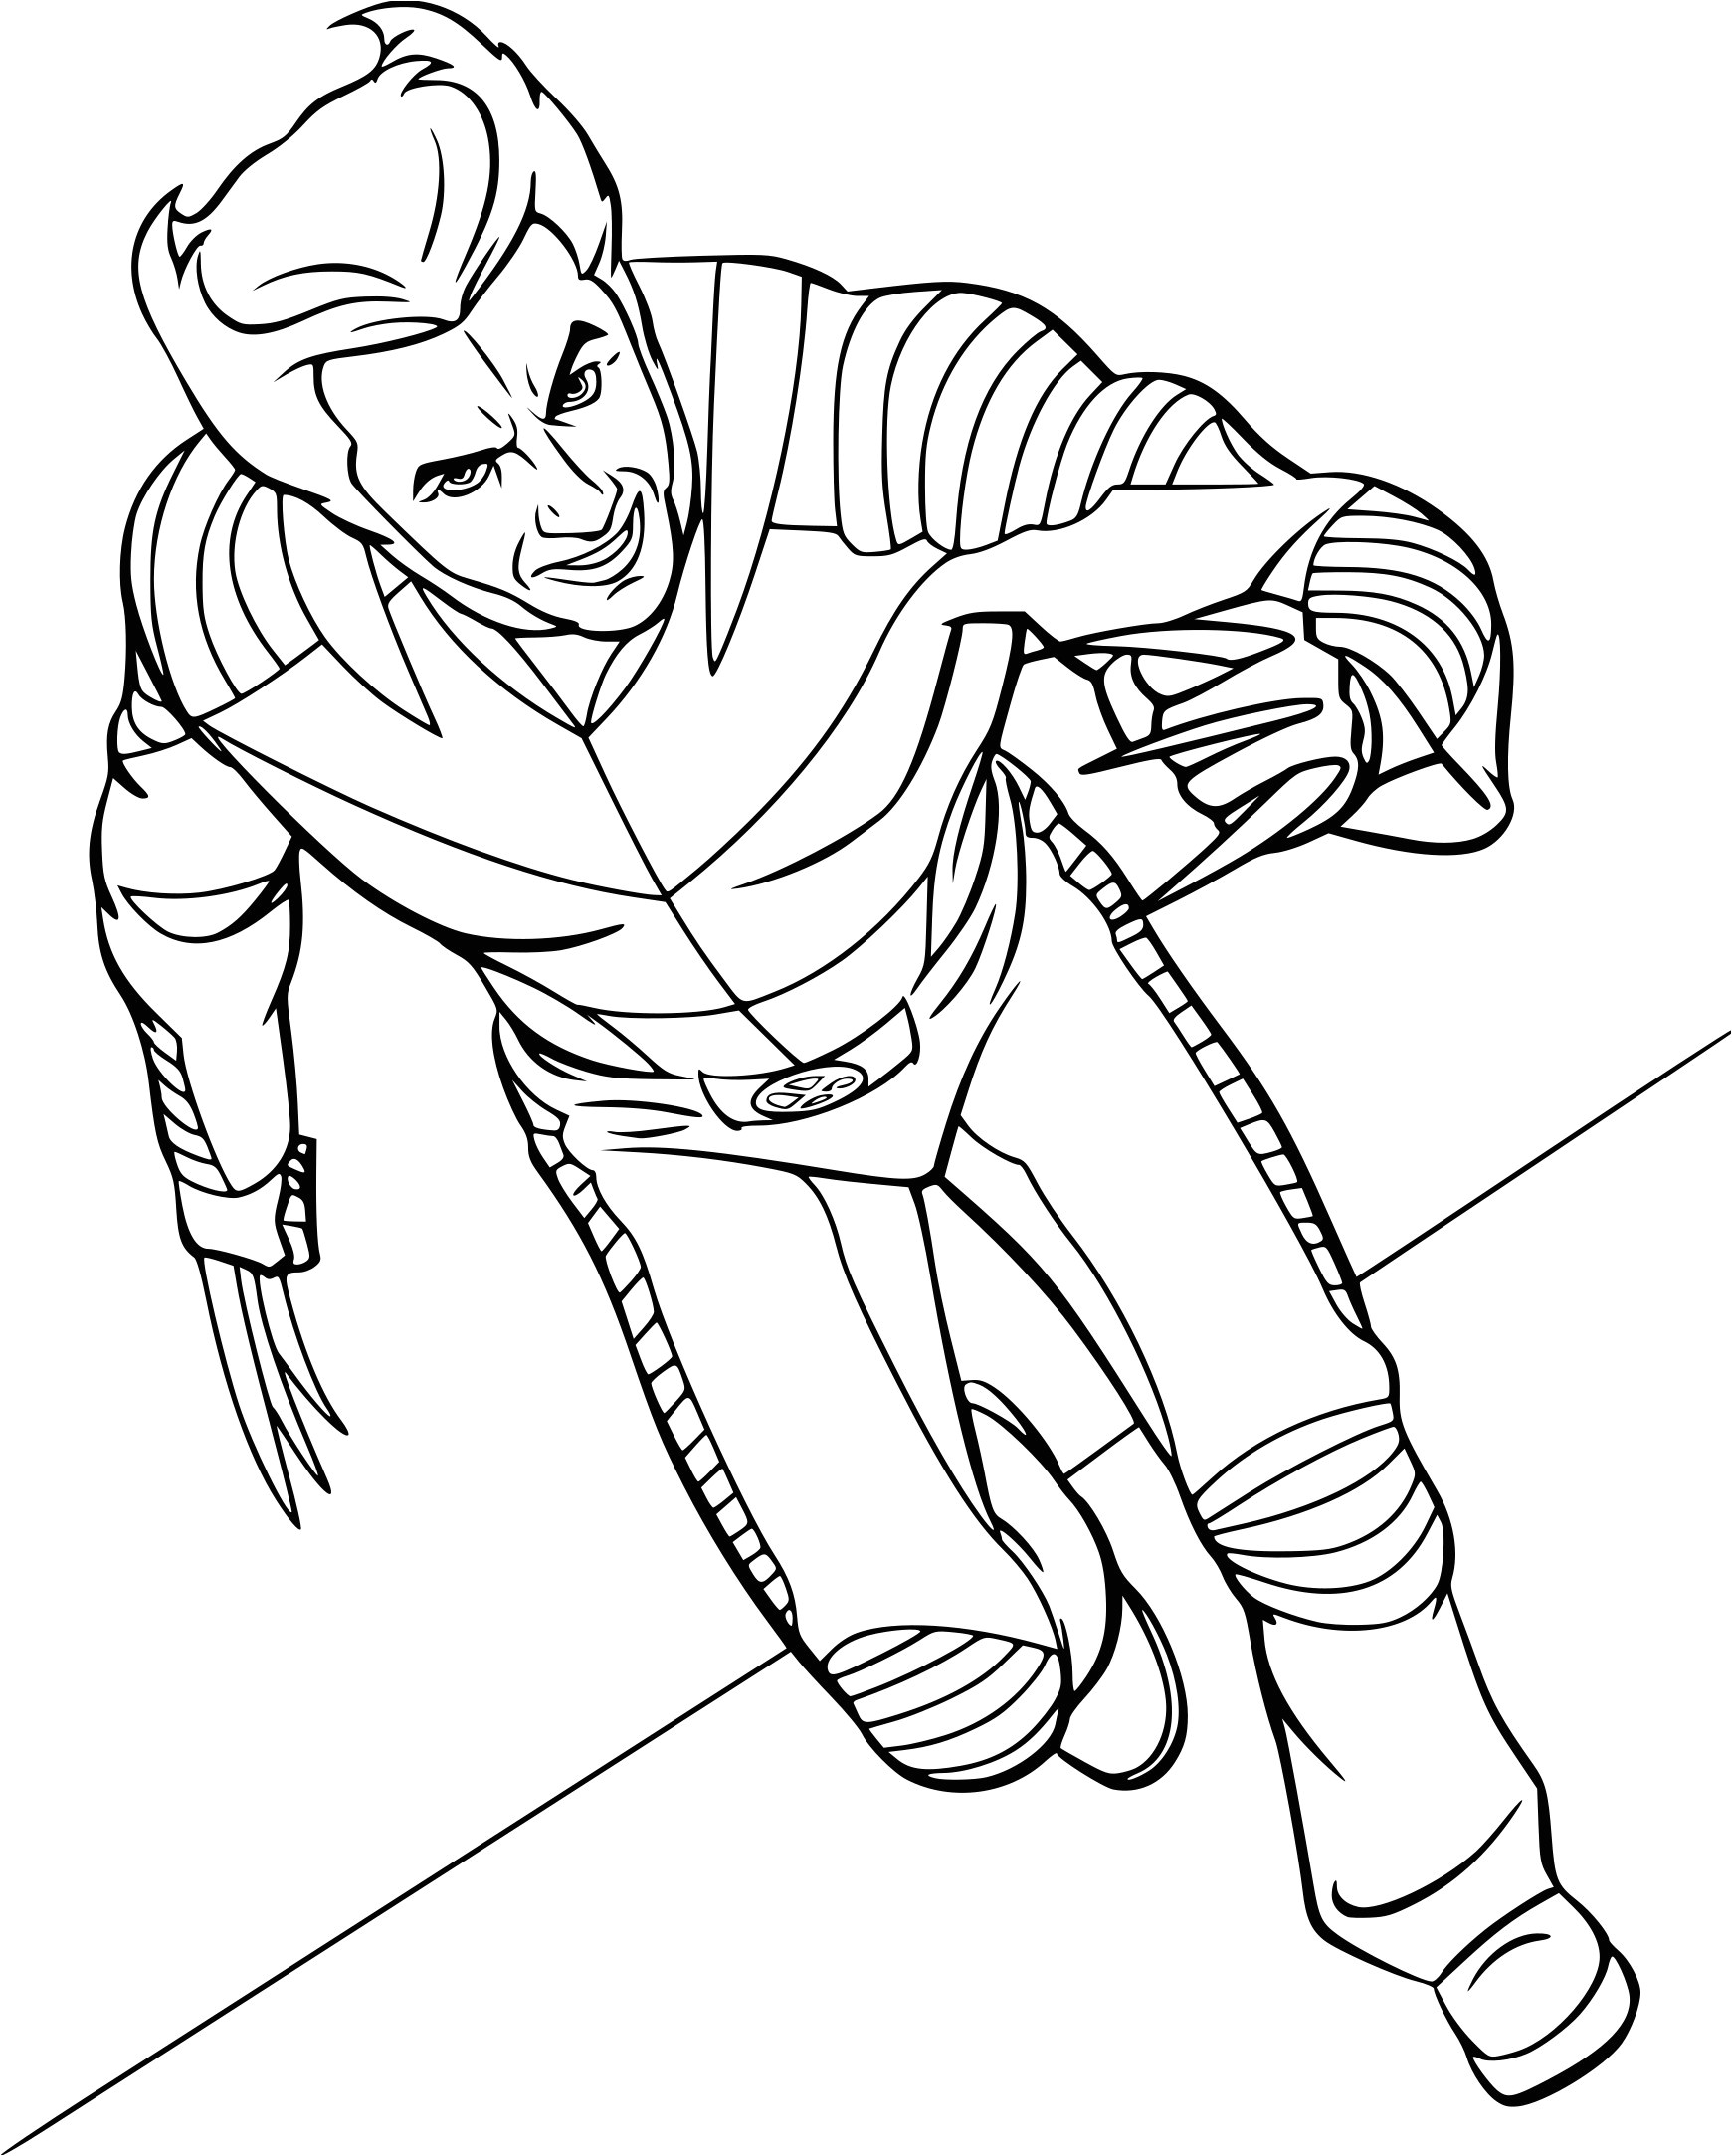 Coloriage Wolverine dessin